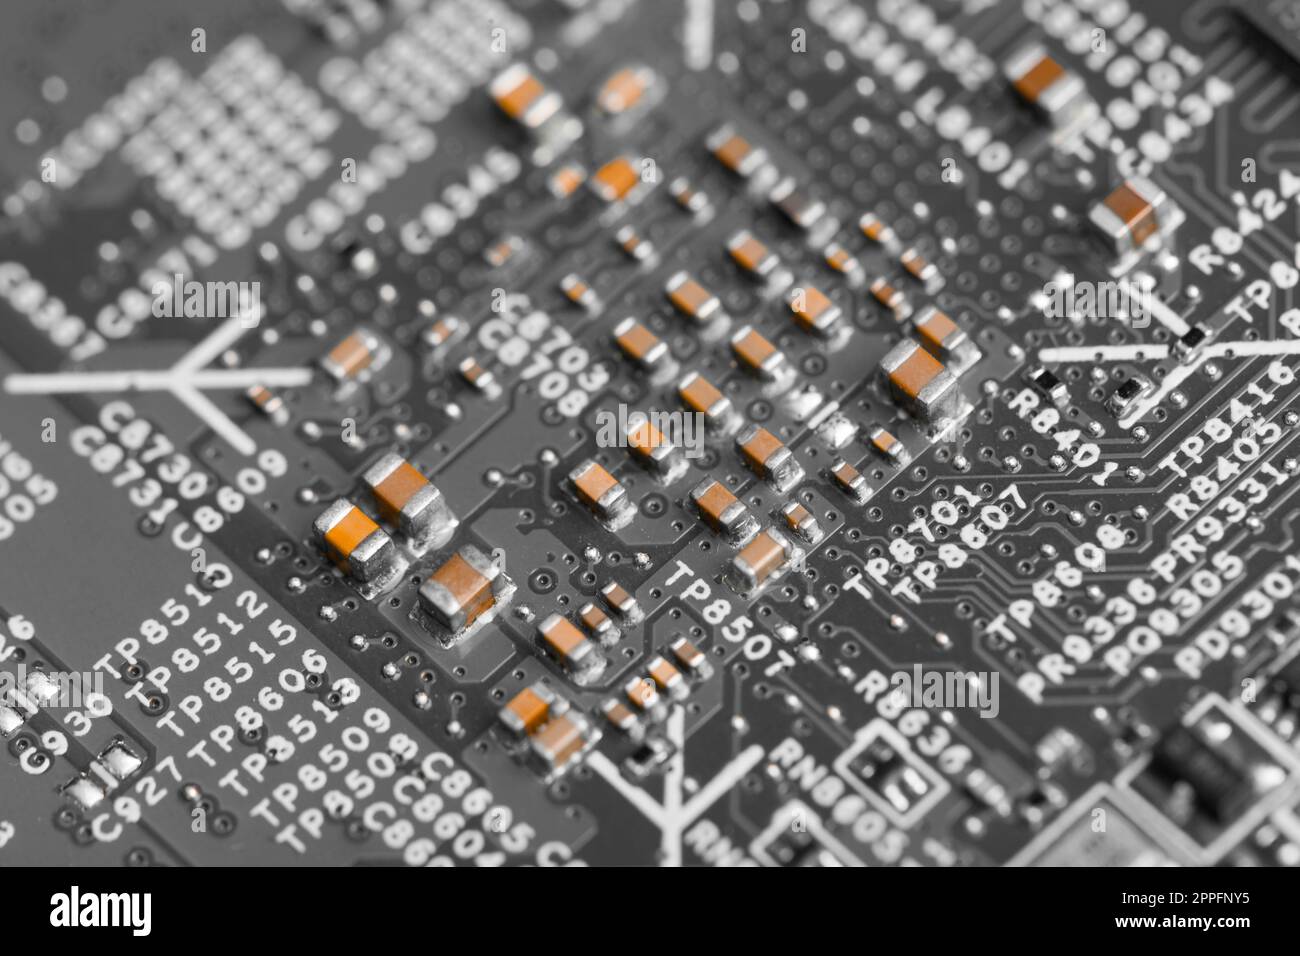 Primo piano dei componenti elettronici sulla scheda madre, chip del microprocessore Foto Stock